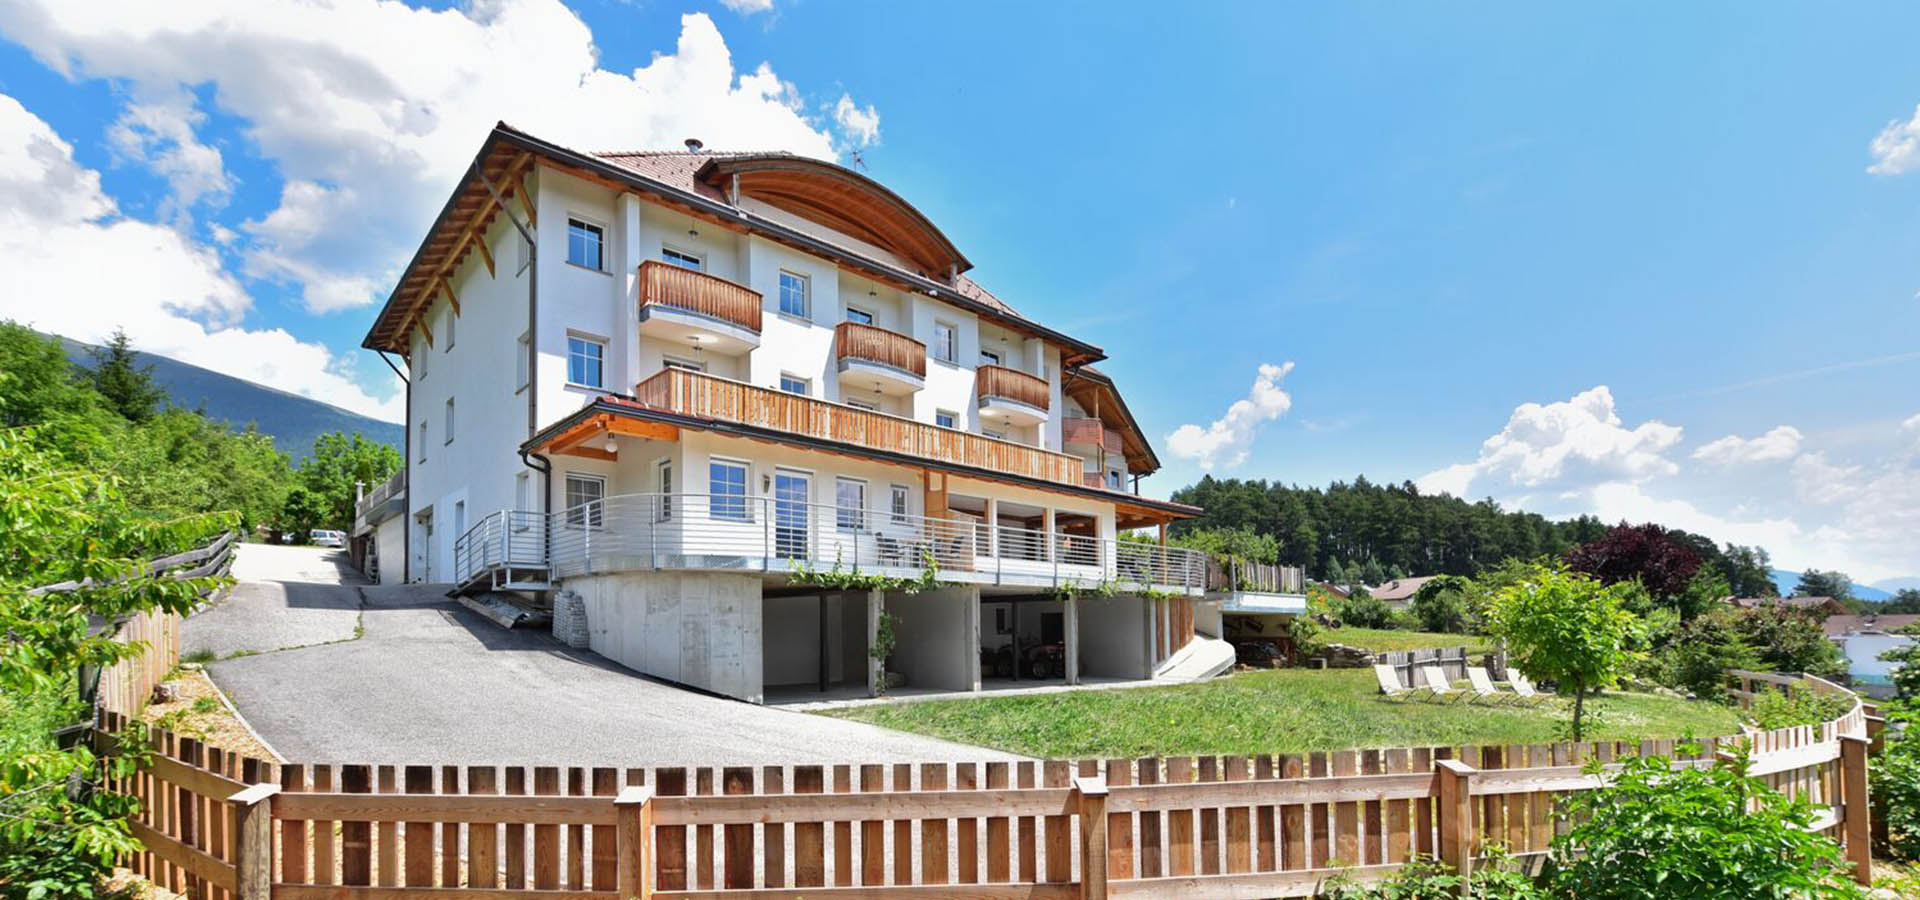 Residence Treyer in Terenten in Südtirol